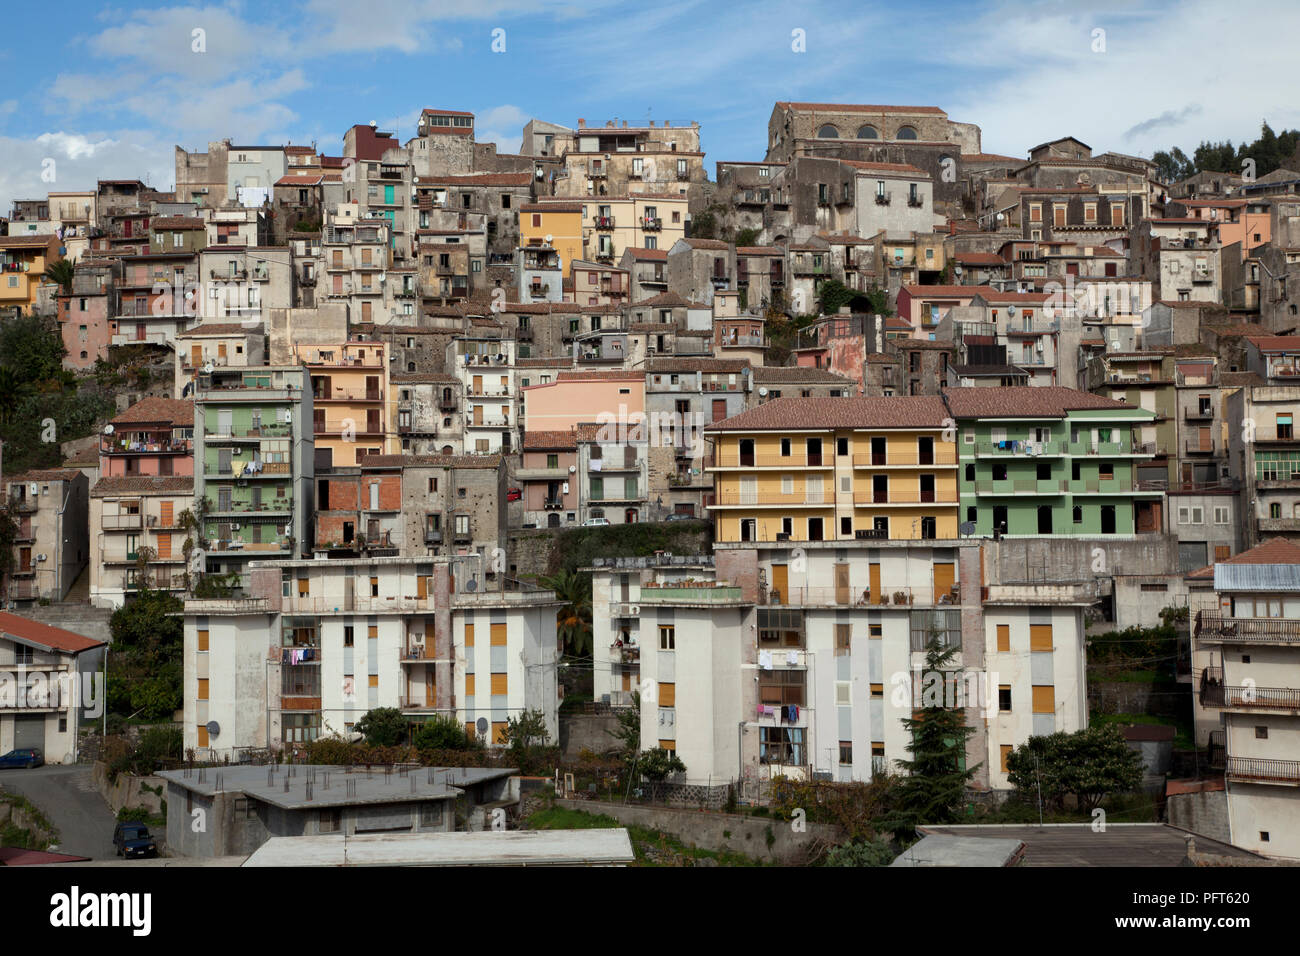 Italy, Sicily, Catania, Castiglione di Sicilia, village built on slopes on Mount Etna Stock Photo